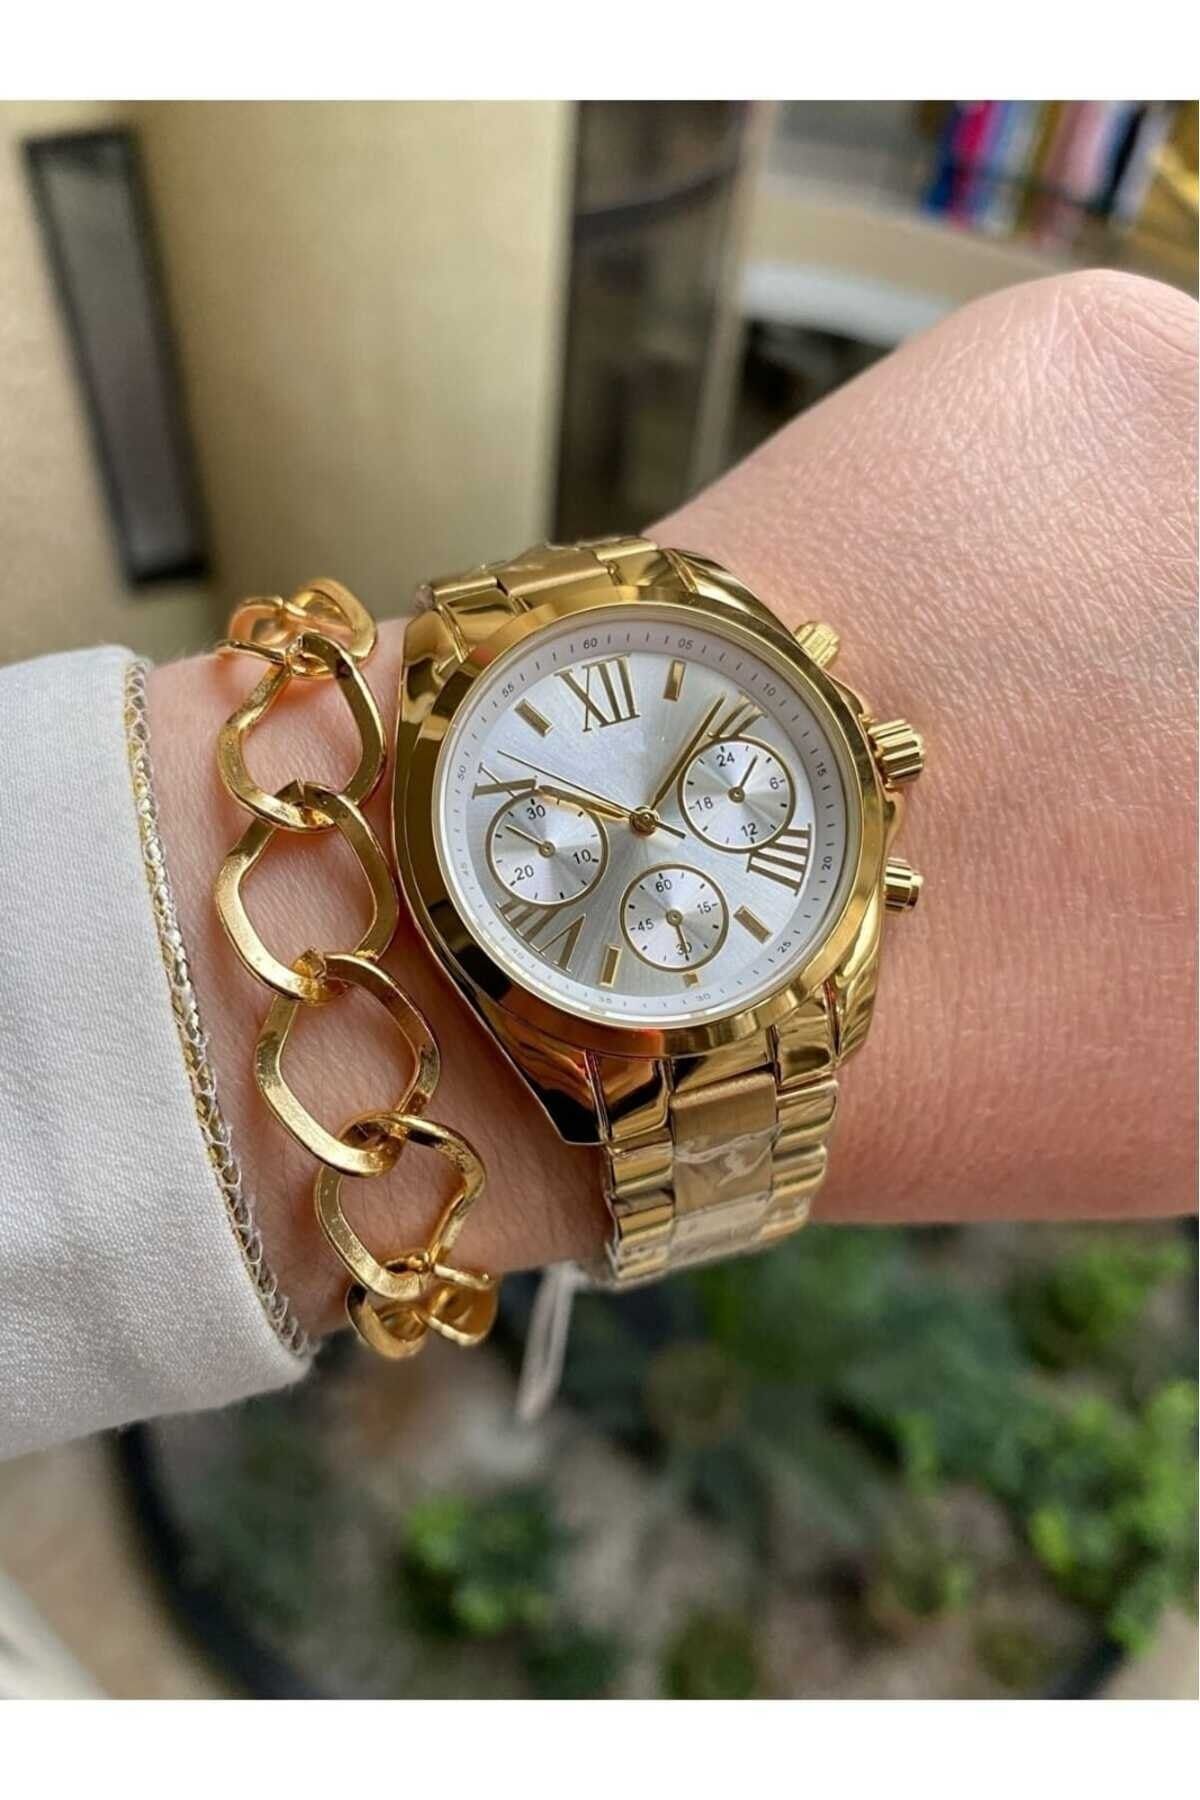 ÇENÇEN Altın Klasik Kadın Kol Saati, Çelik Kasa Zirkon Taşlı Analog Klasik Saat